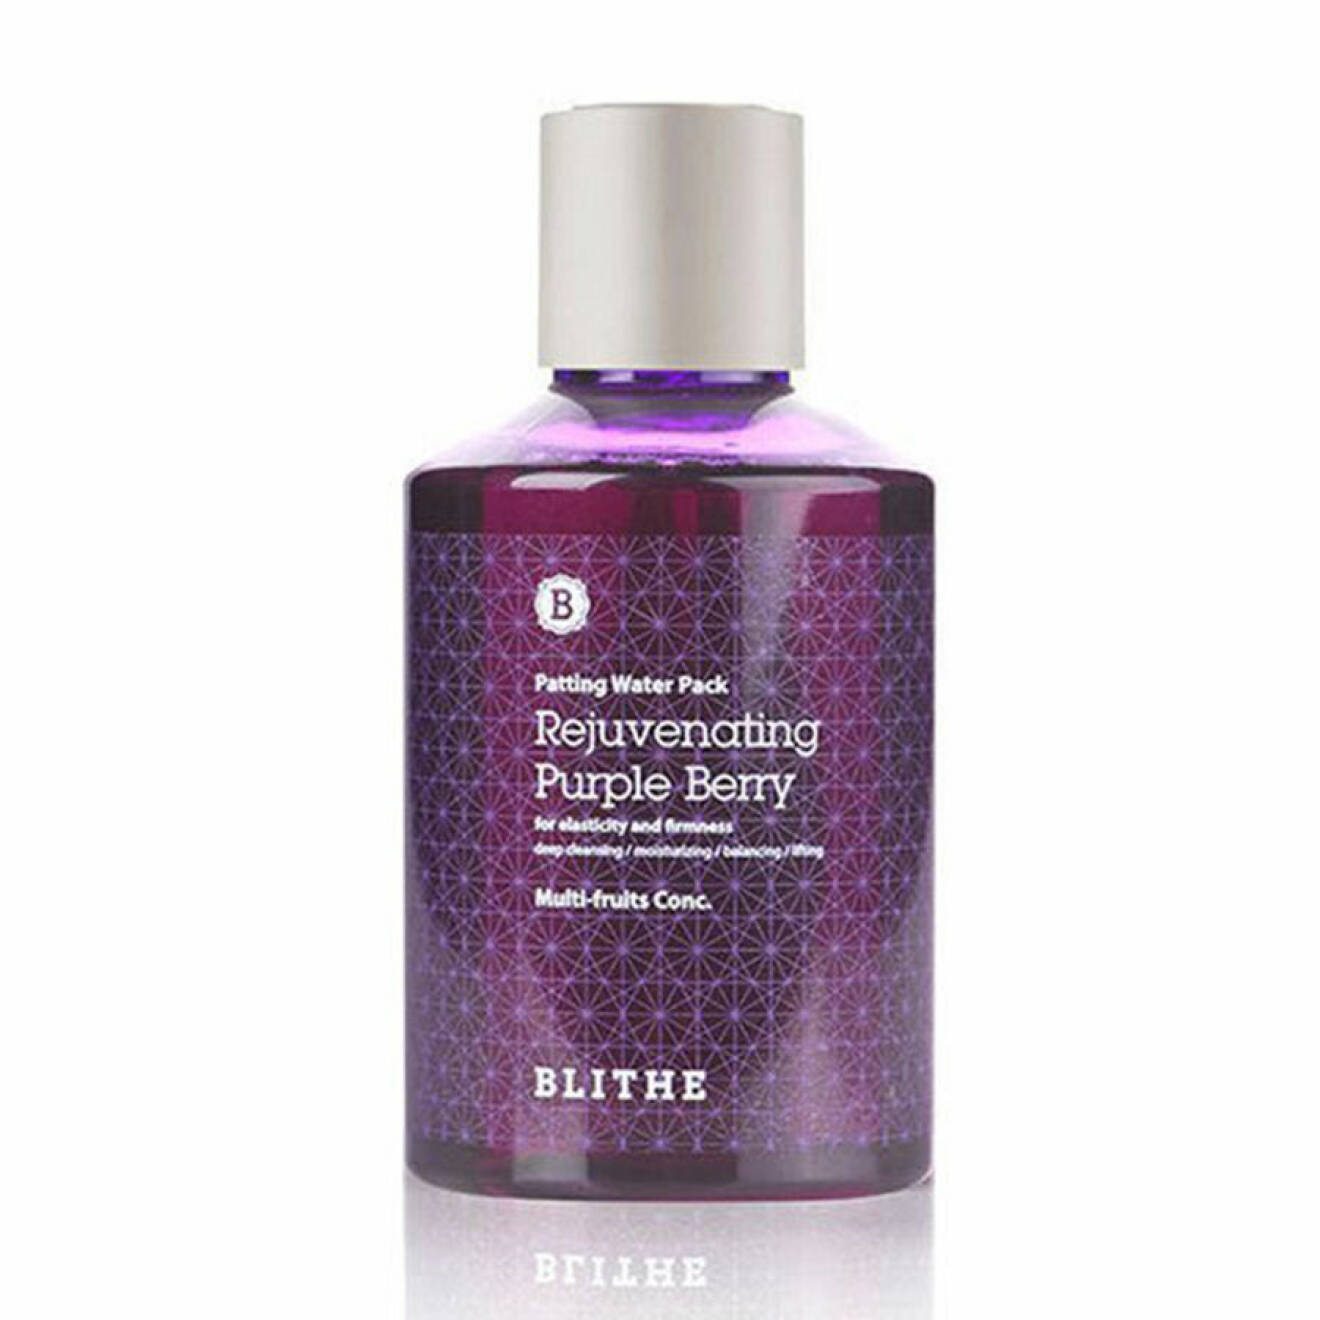 blithe-rejuvenating-purple-berry_0d43de8d-1de8-440a-a82a-55c795528bb9_1024x1024